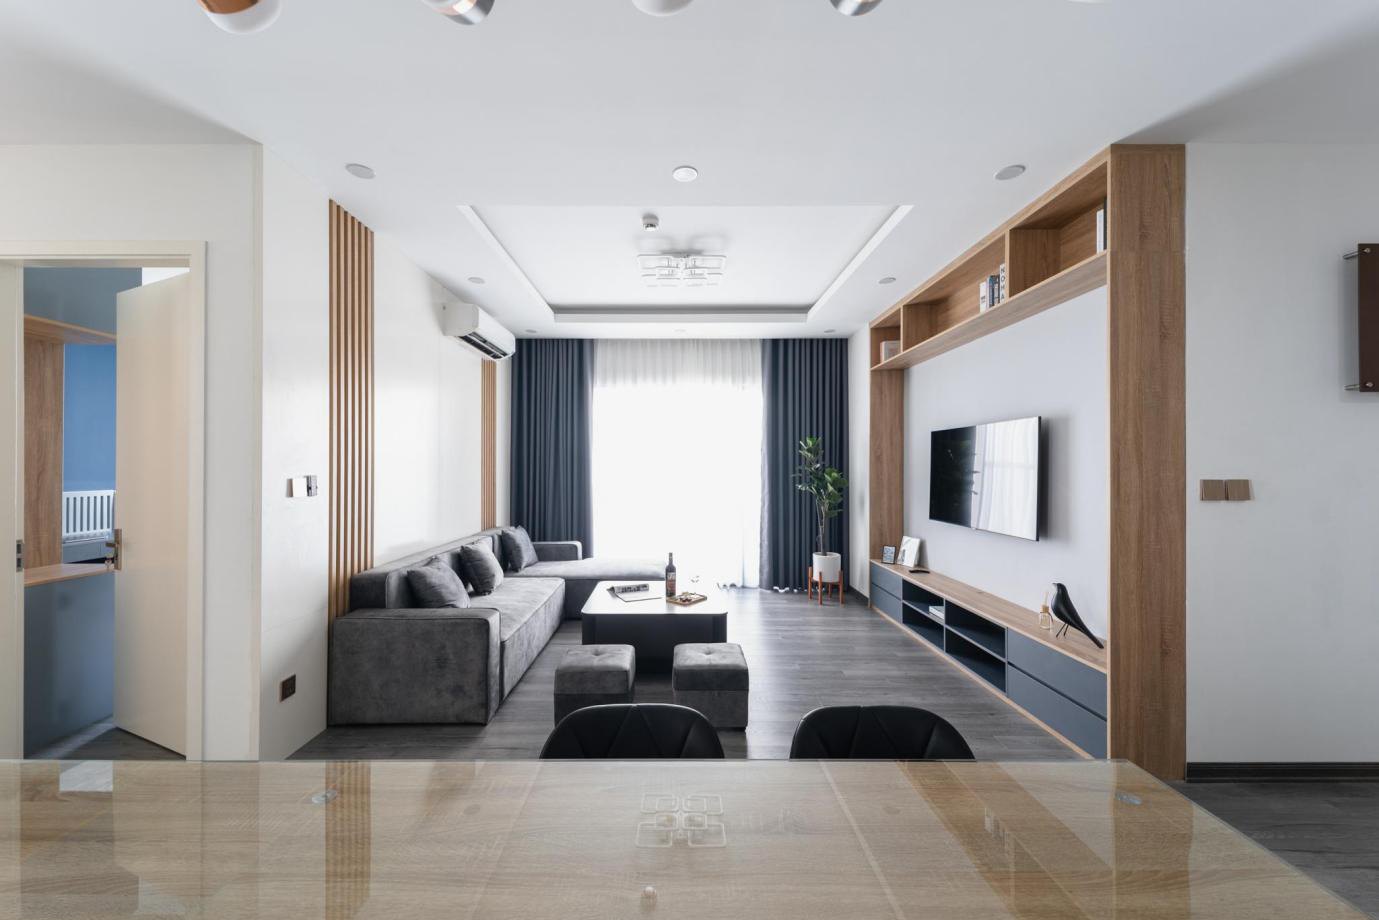 Giải pháp thiết kế nội thất chung cư liên thông phòng khách và bếp ấn tượng, hiệu quả - Ảnh 2.